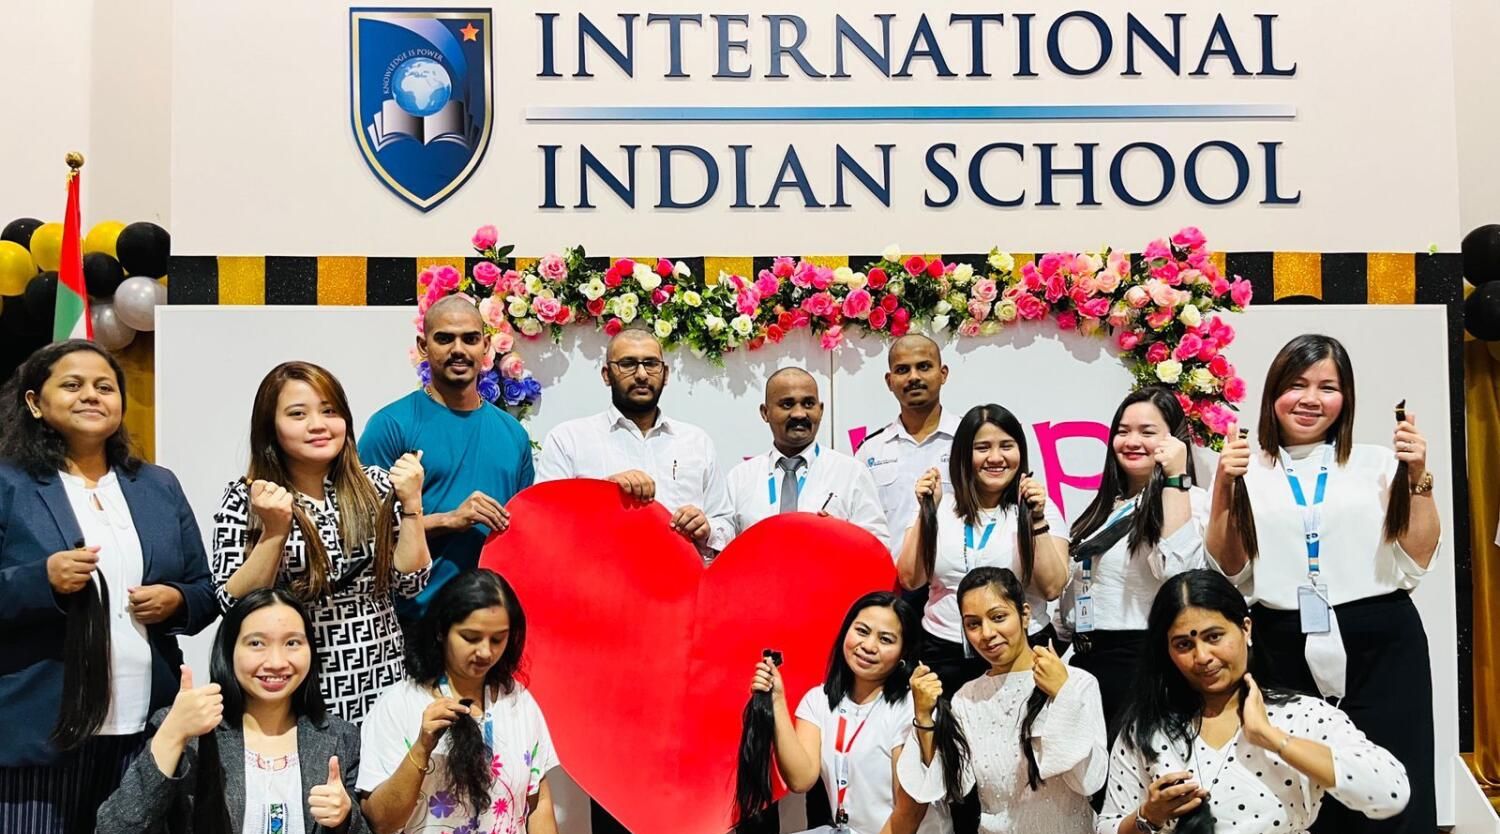 الإمارات العربية المتحدة: معلمو المدارس الهندية يتبرّعون بشعرهم لطالبة تصارع مرض السرطان